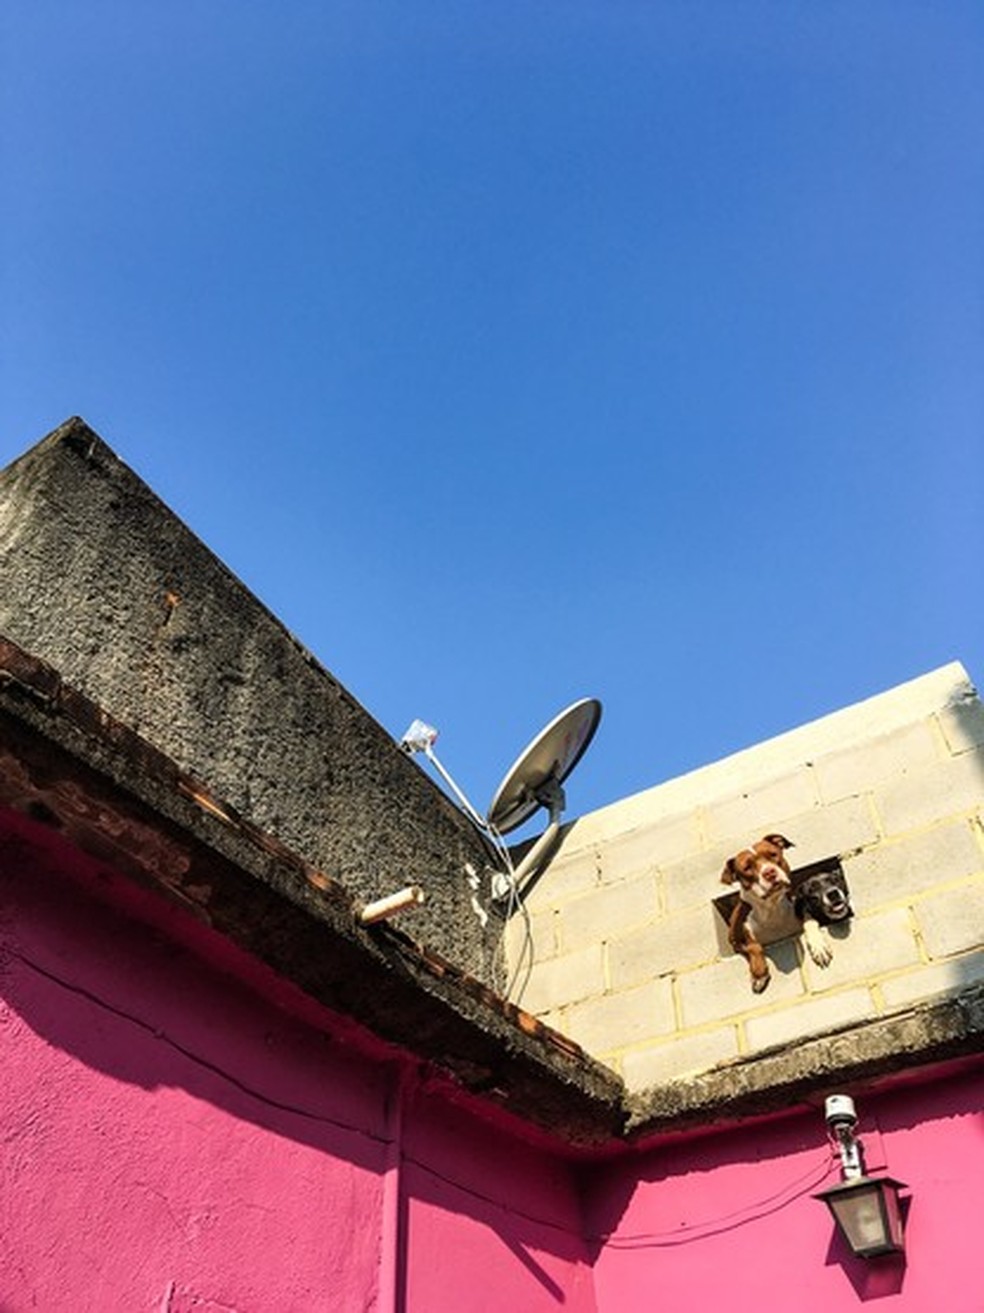 Dois cães dividem espaço em uma janela  — Foto: Saulo Nicolai/Favelagrafia 